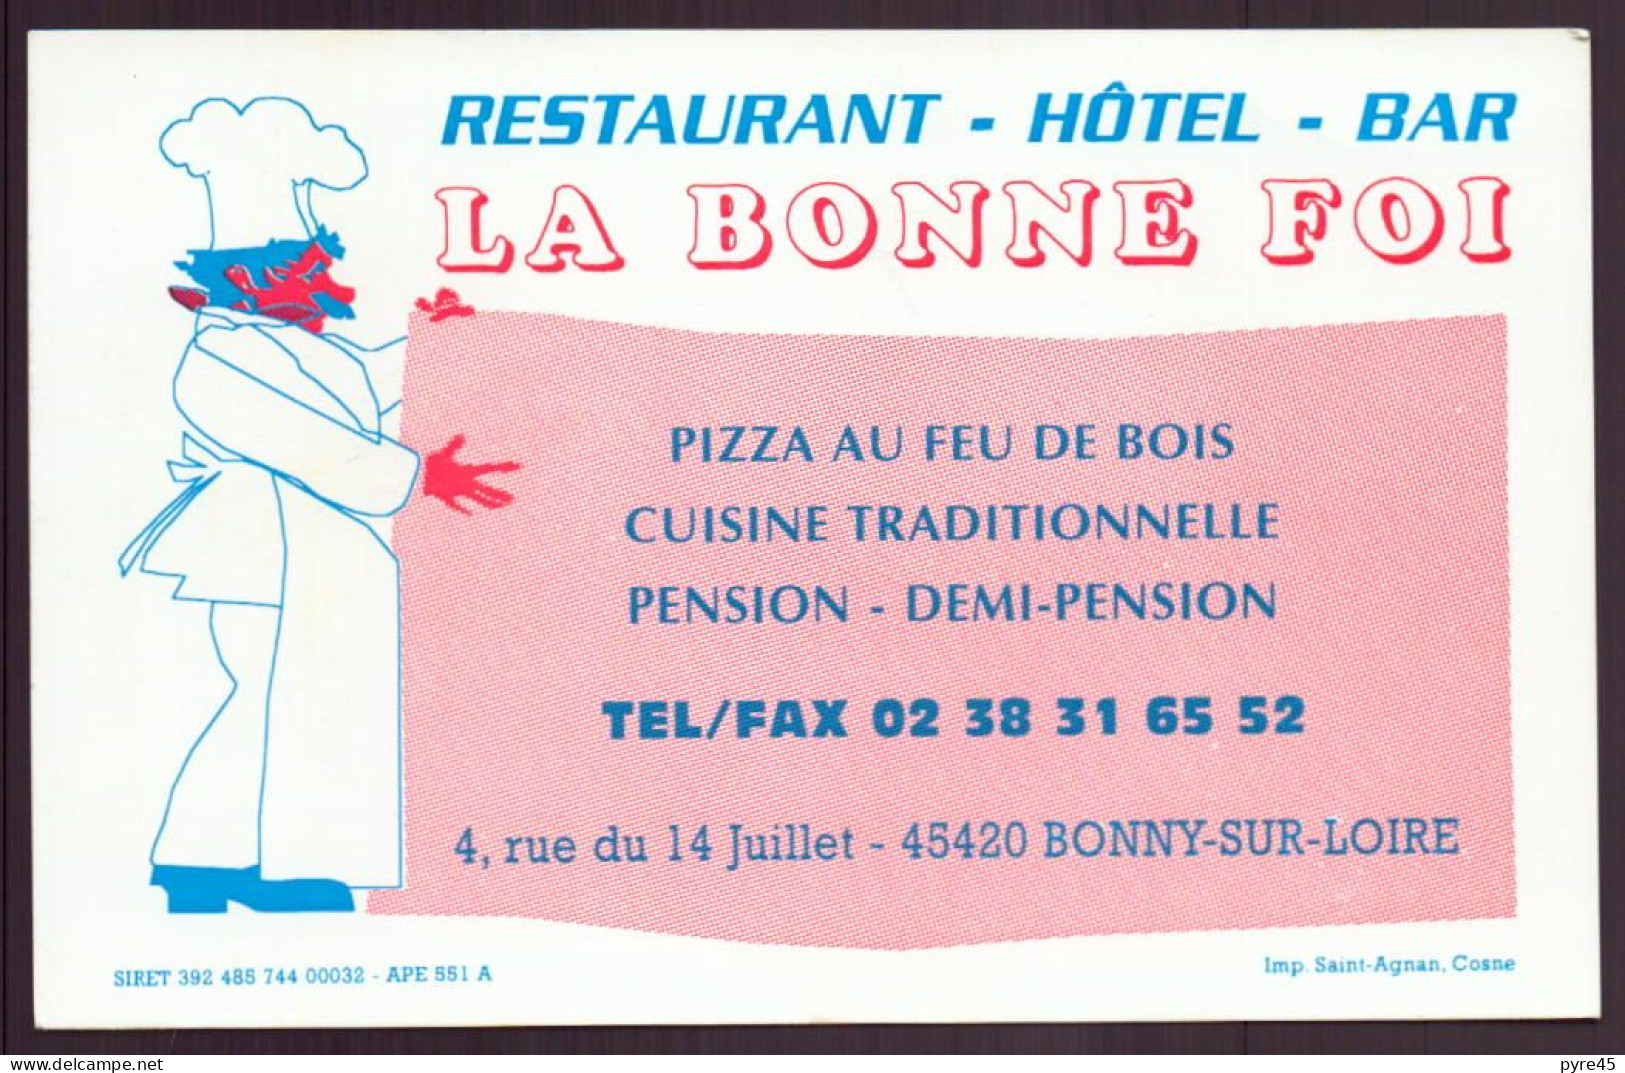 CARTE PUBLICITAIRE LA BONNE FOI A BONNY SUR LOIRE RESTAURANT HOTEL BAR - Visitenkarten